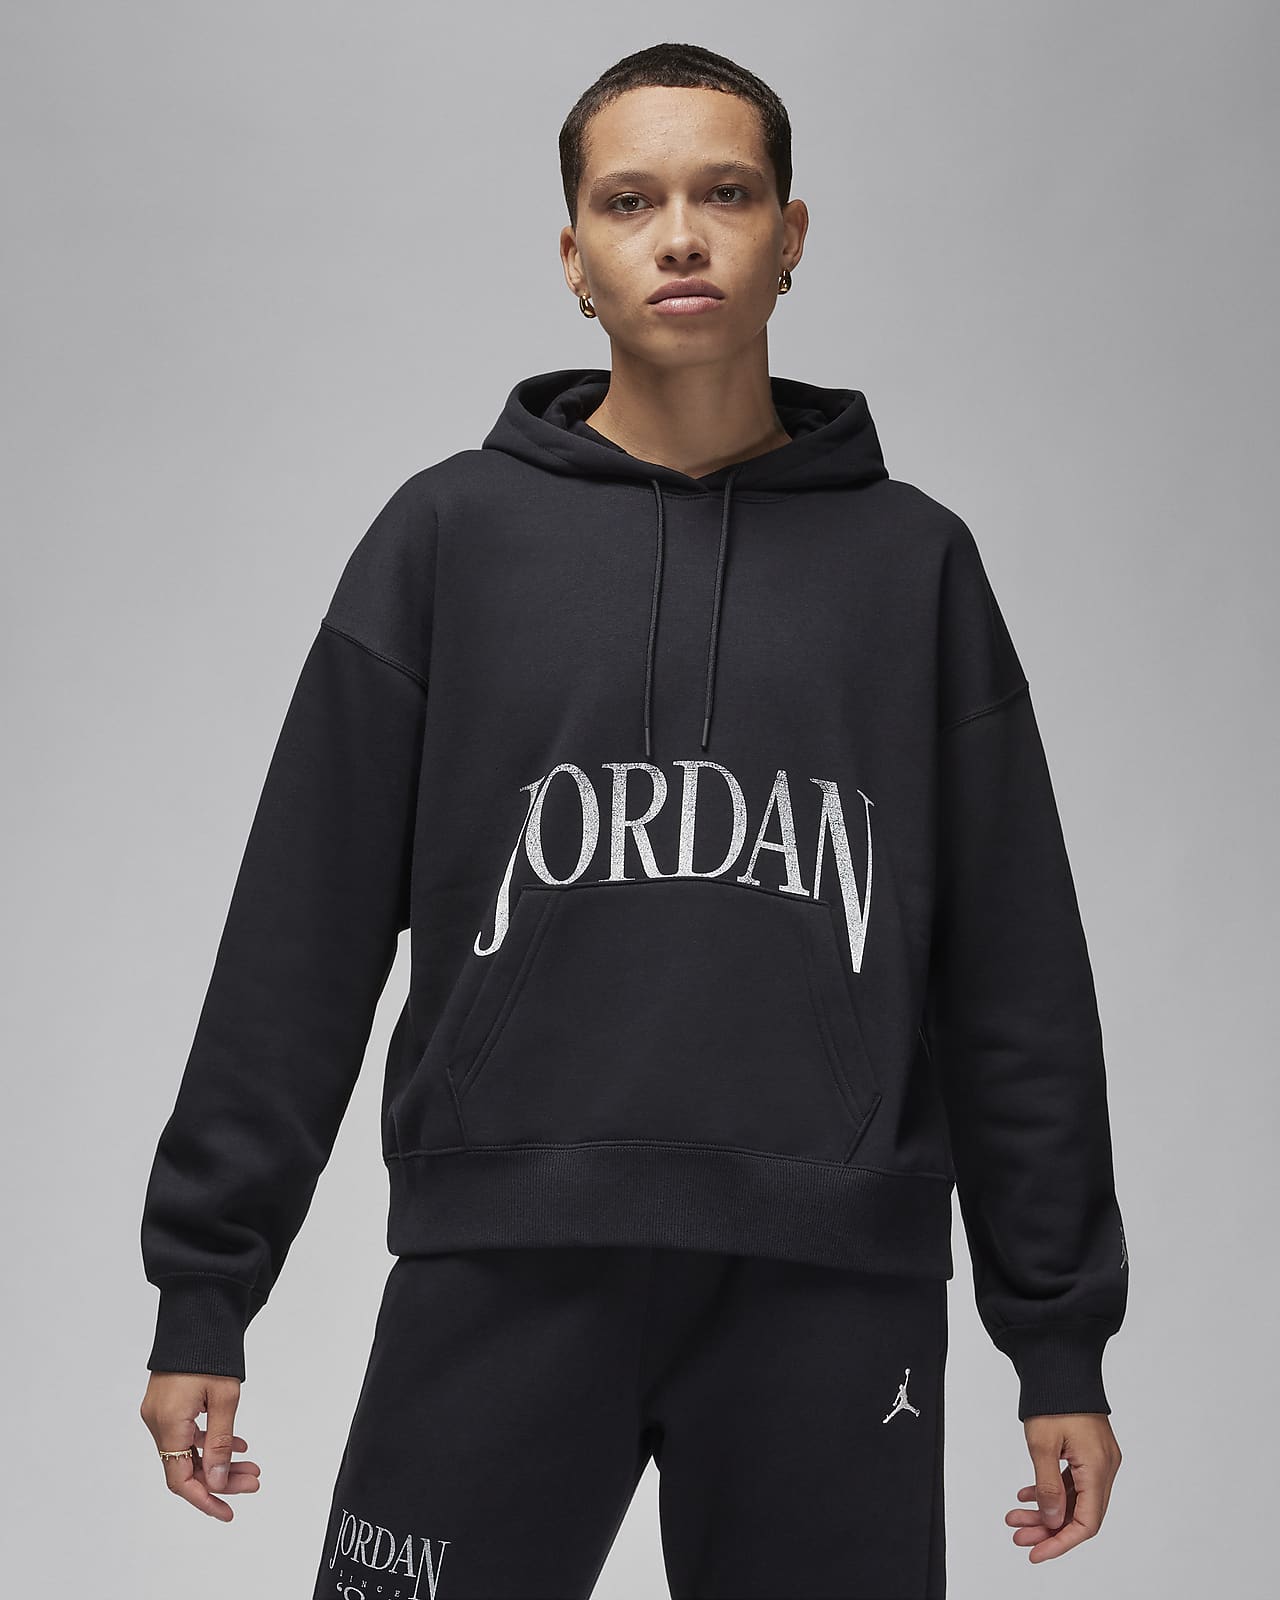 Jordan Sudaderas Con Capucha Hombres Mujeres Conjuntos Casual Jersey +  Pantalones Trajes